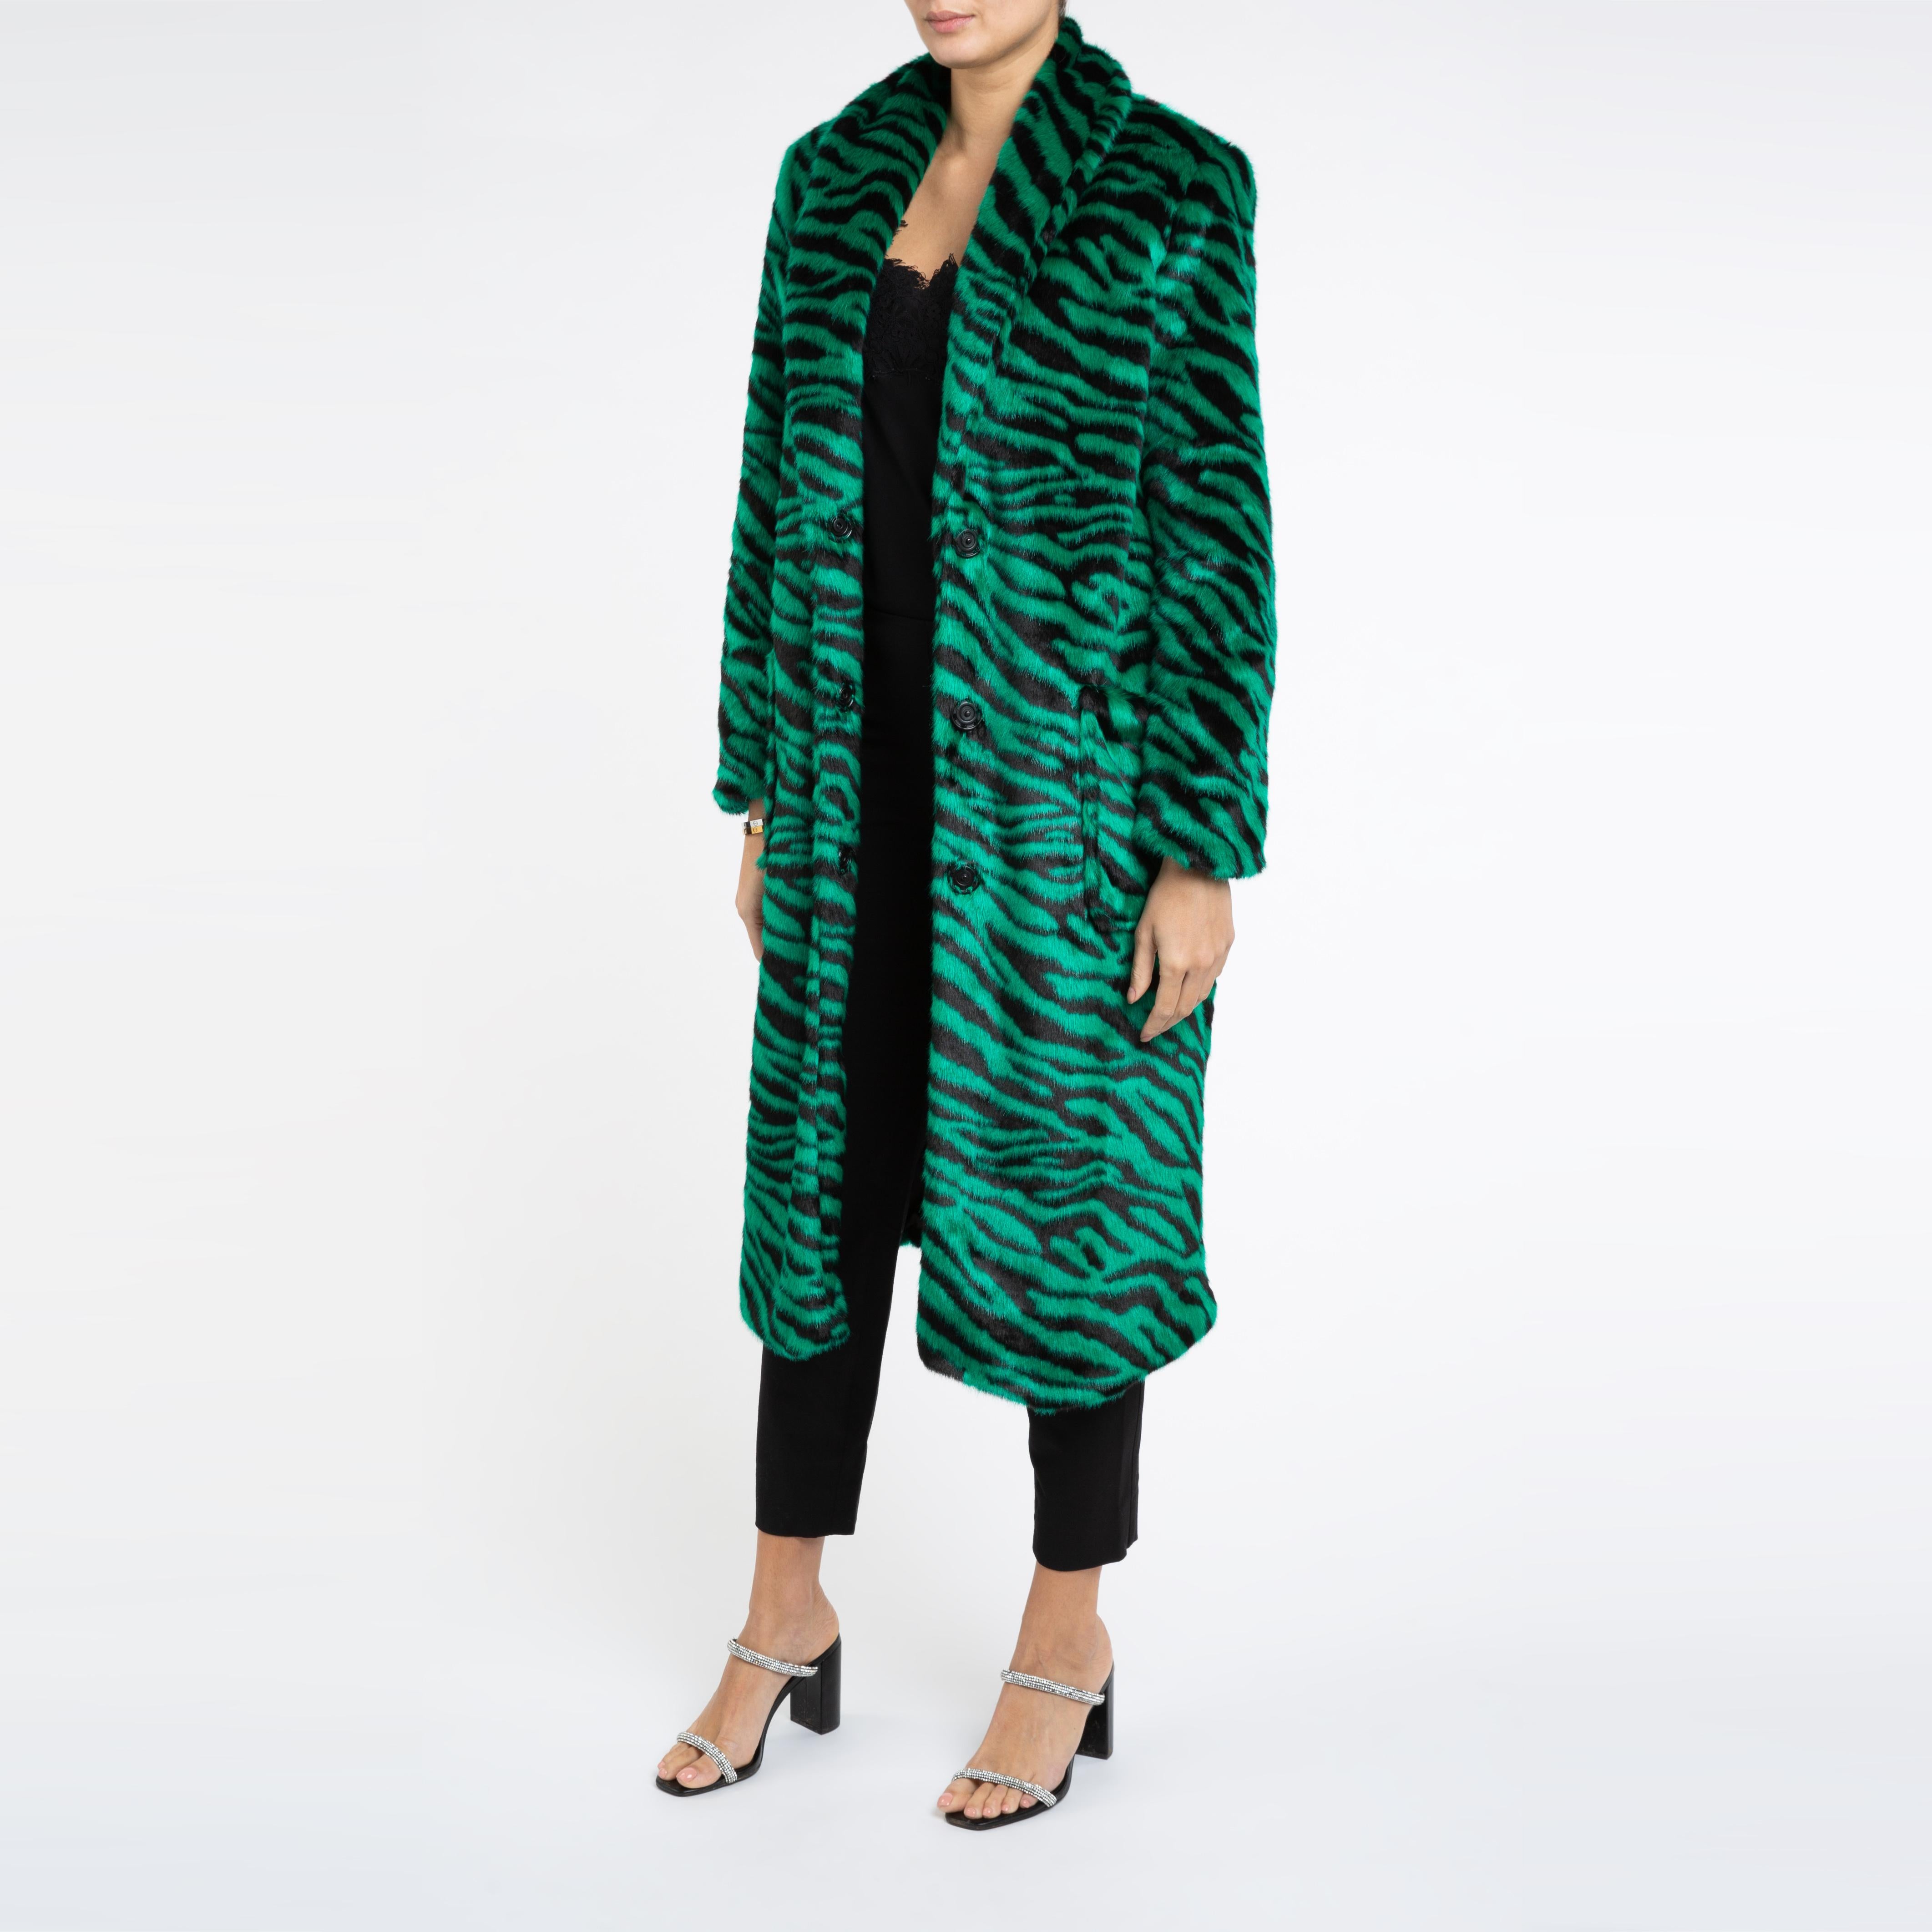 Verheyen London Esmeralda Faux Fur Coat in Emerald Green Zebra Print size uk 12 For Sale 1